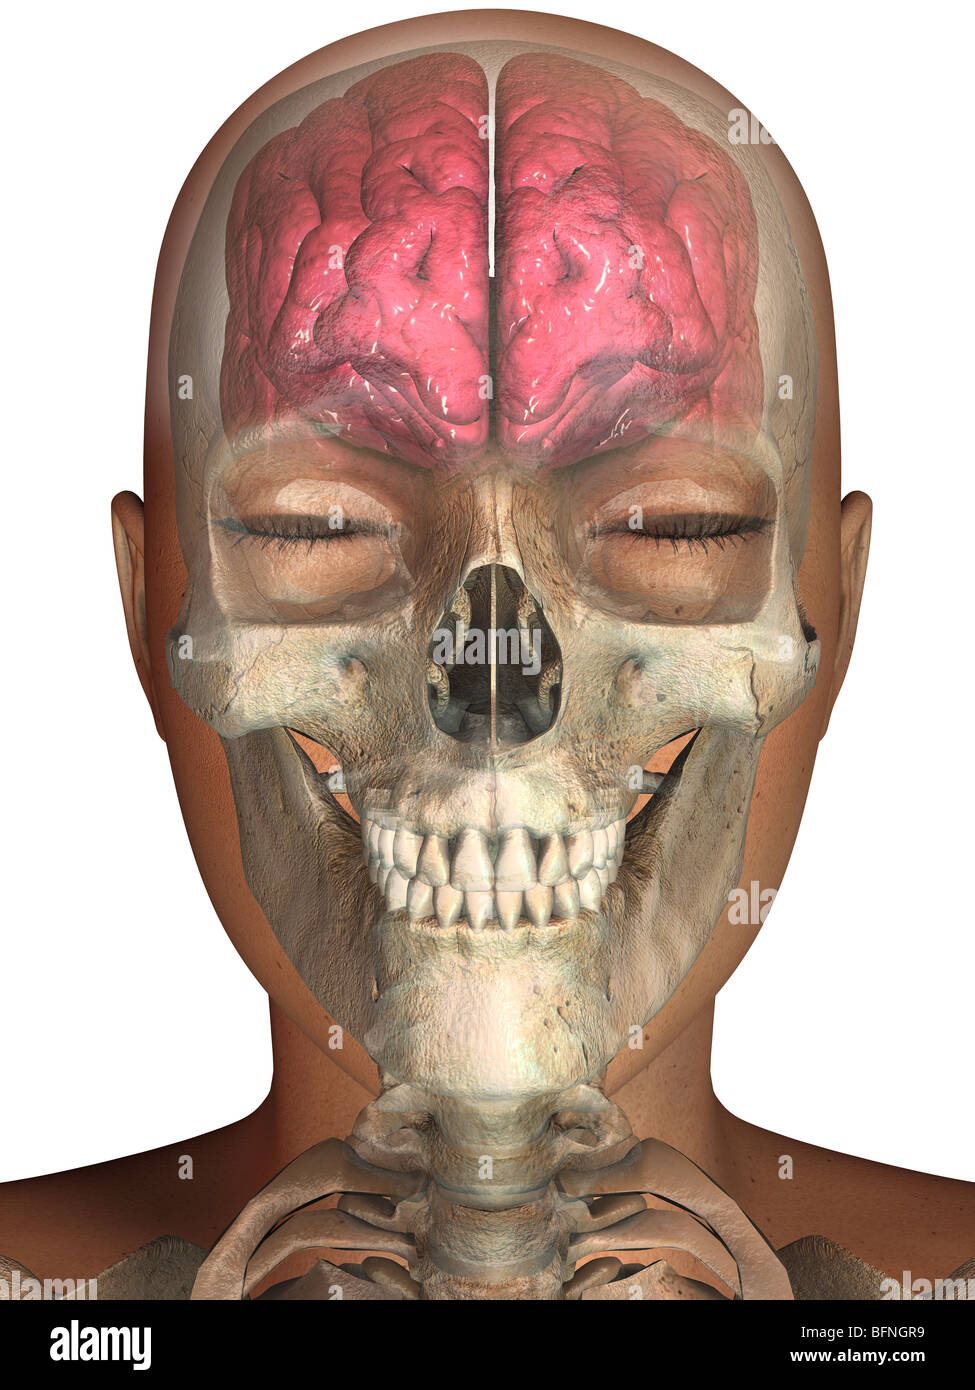 Abbildung von dem menschlichen Gehirn und Schädel in einem transparenten Kopf gesehen Stockfoto